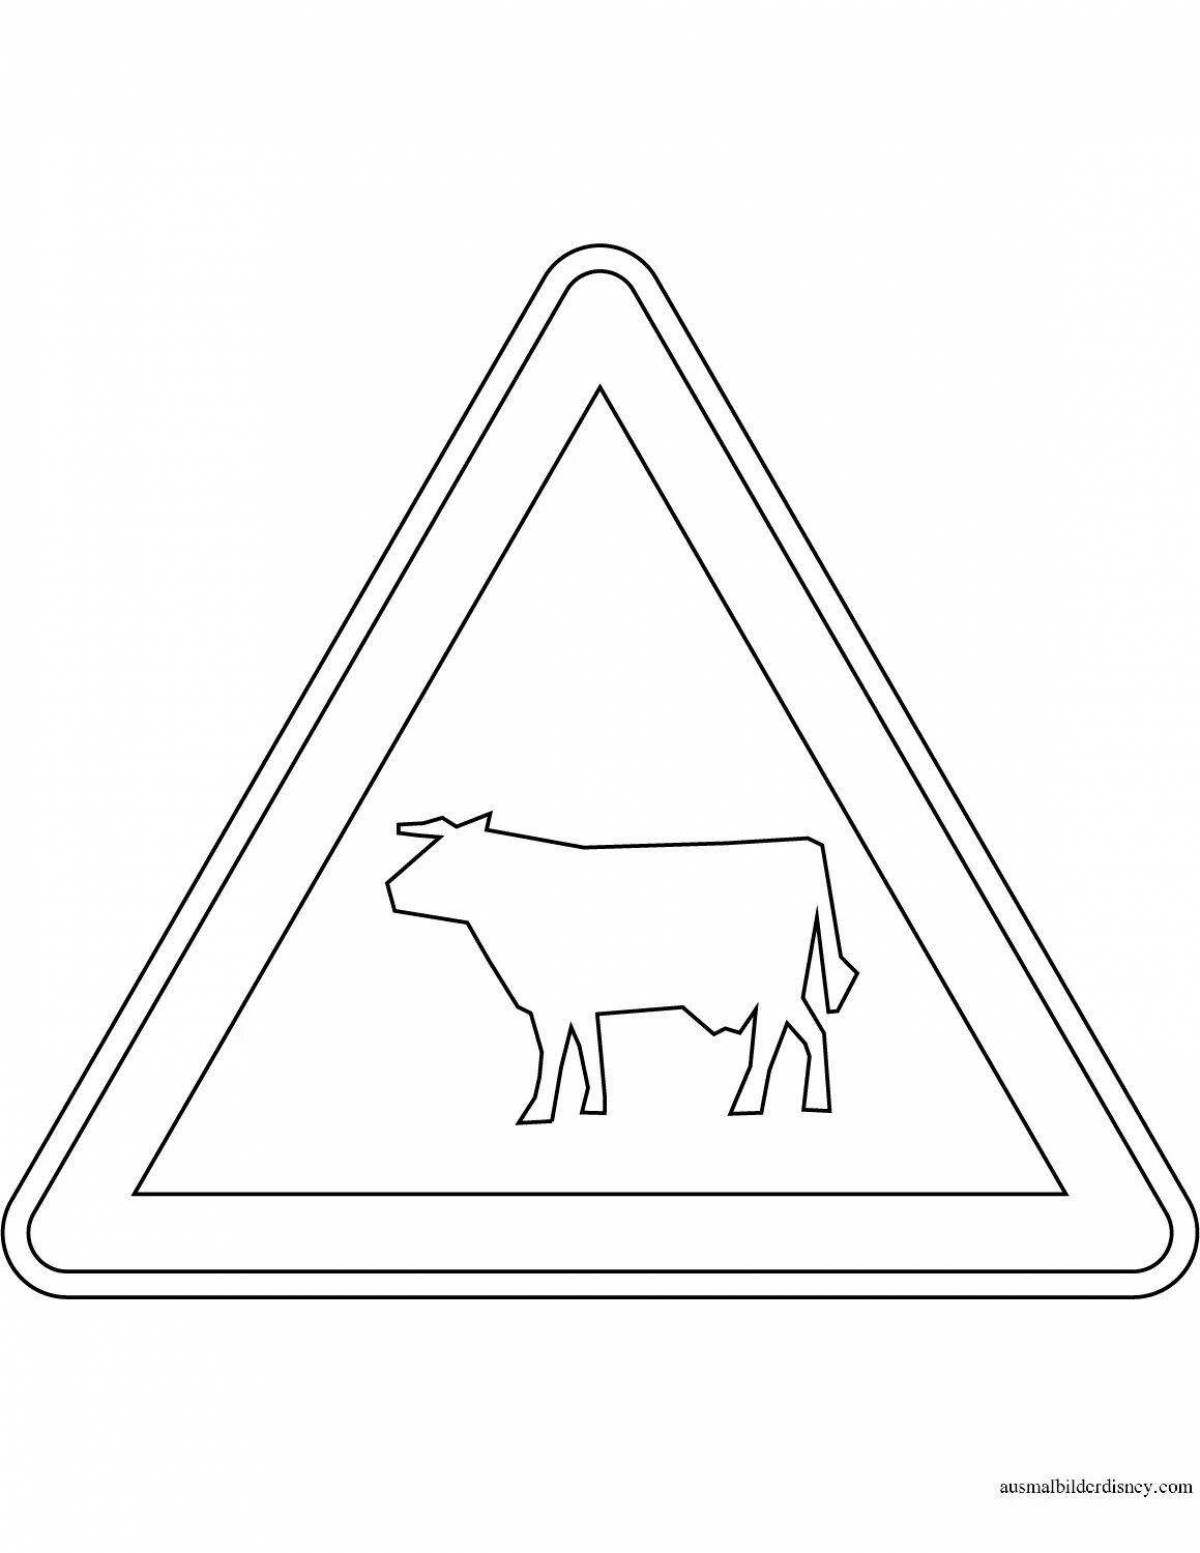 Яркая раскраска знак правил дорожного движения диких животных